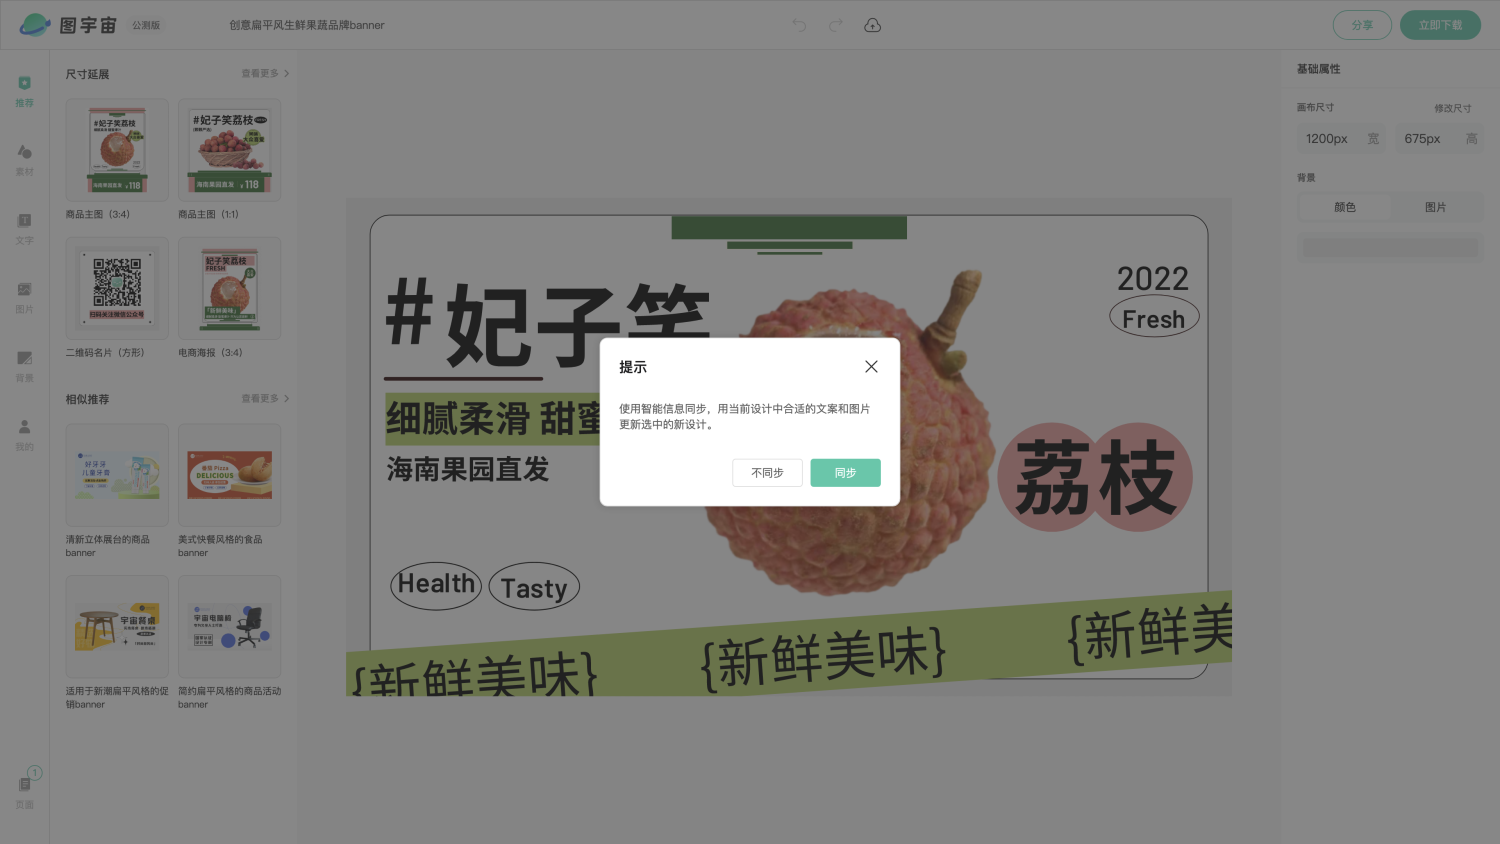 图宇宙-编辑器-创意扁平风生鲜果蔬品牌banner